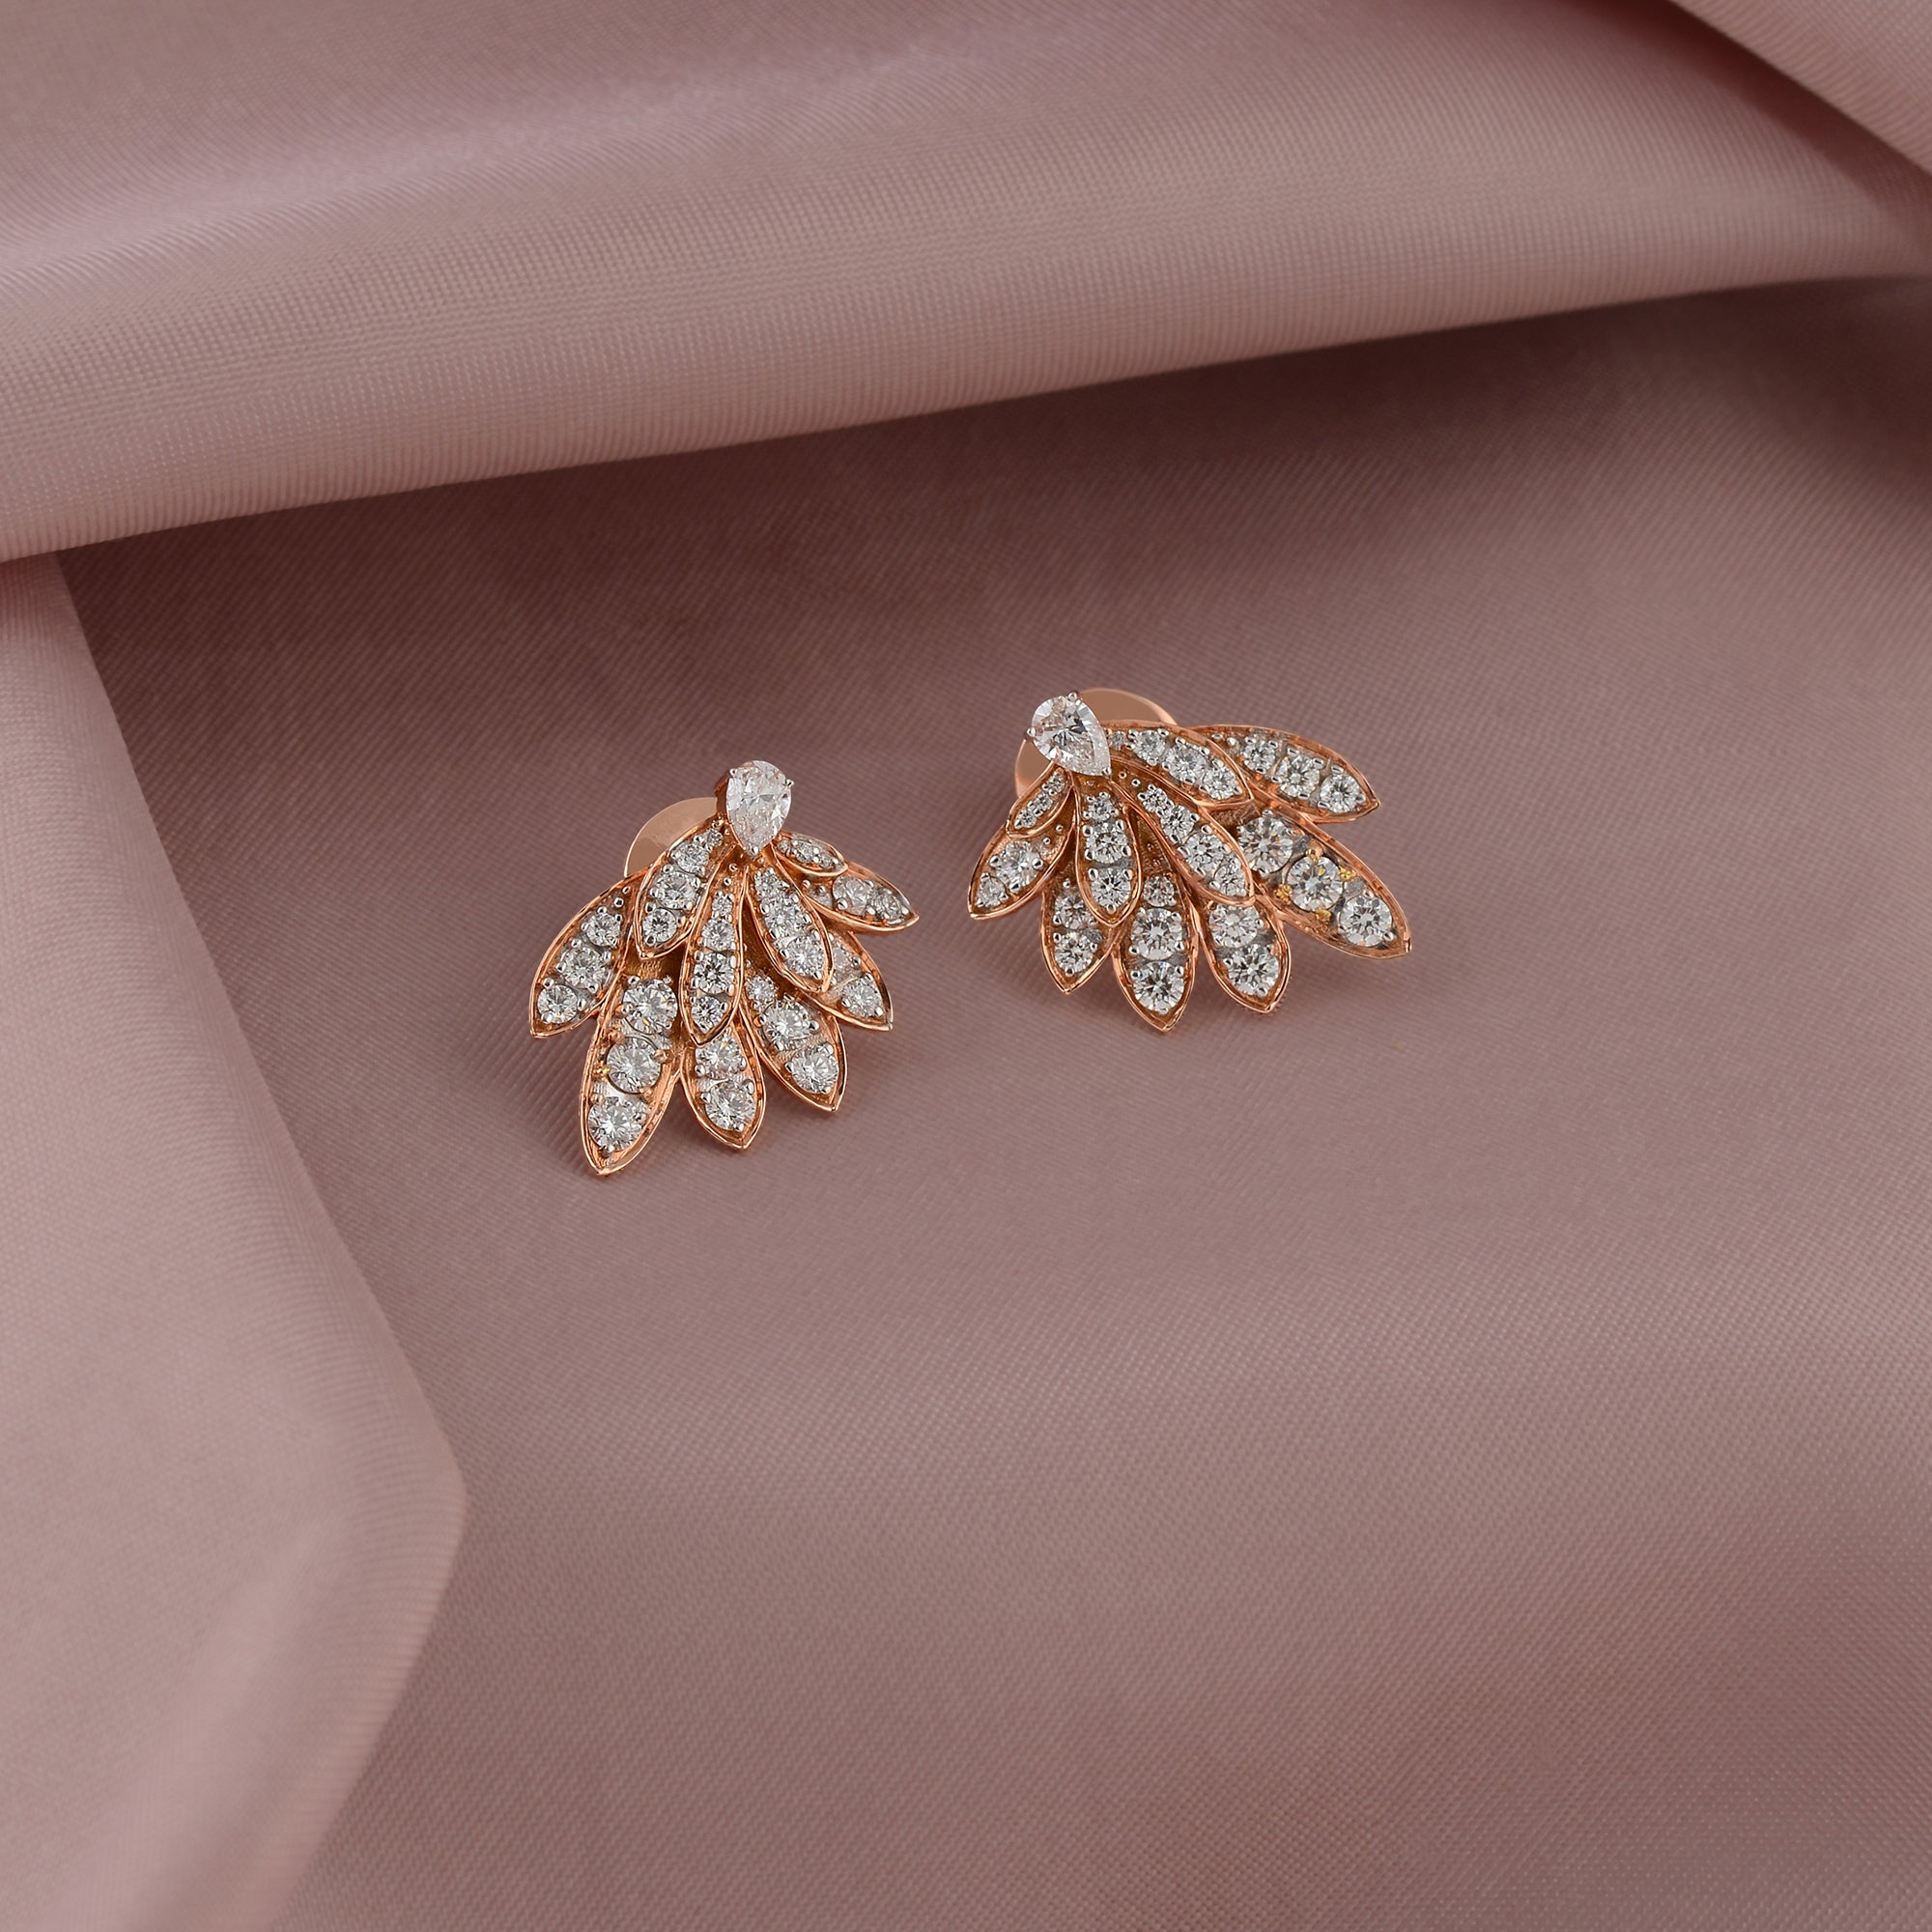 Luxurious Diamond Earrings In Petals Motif